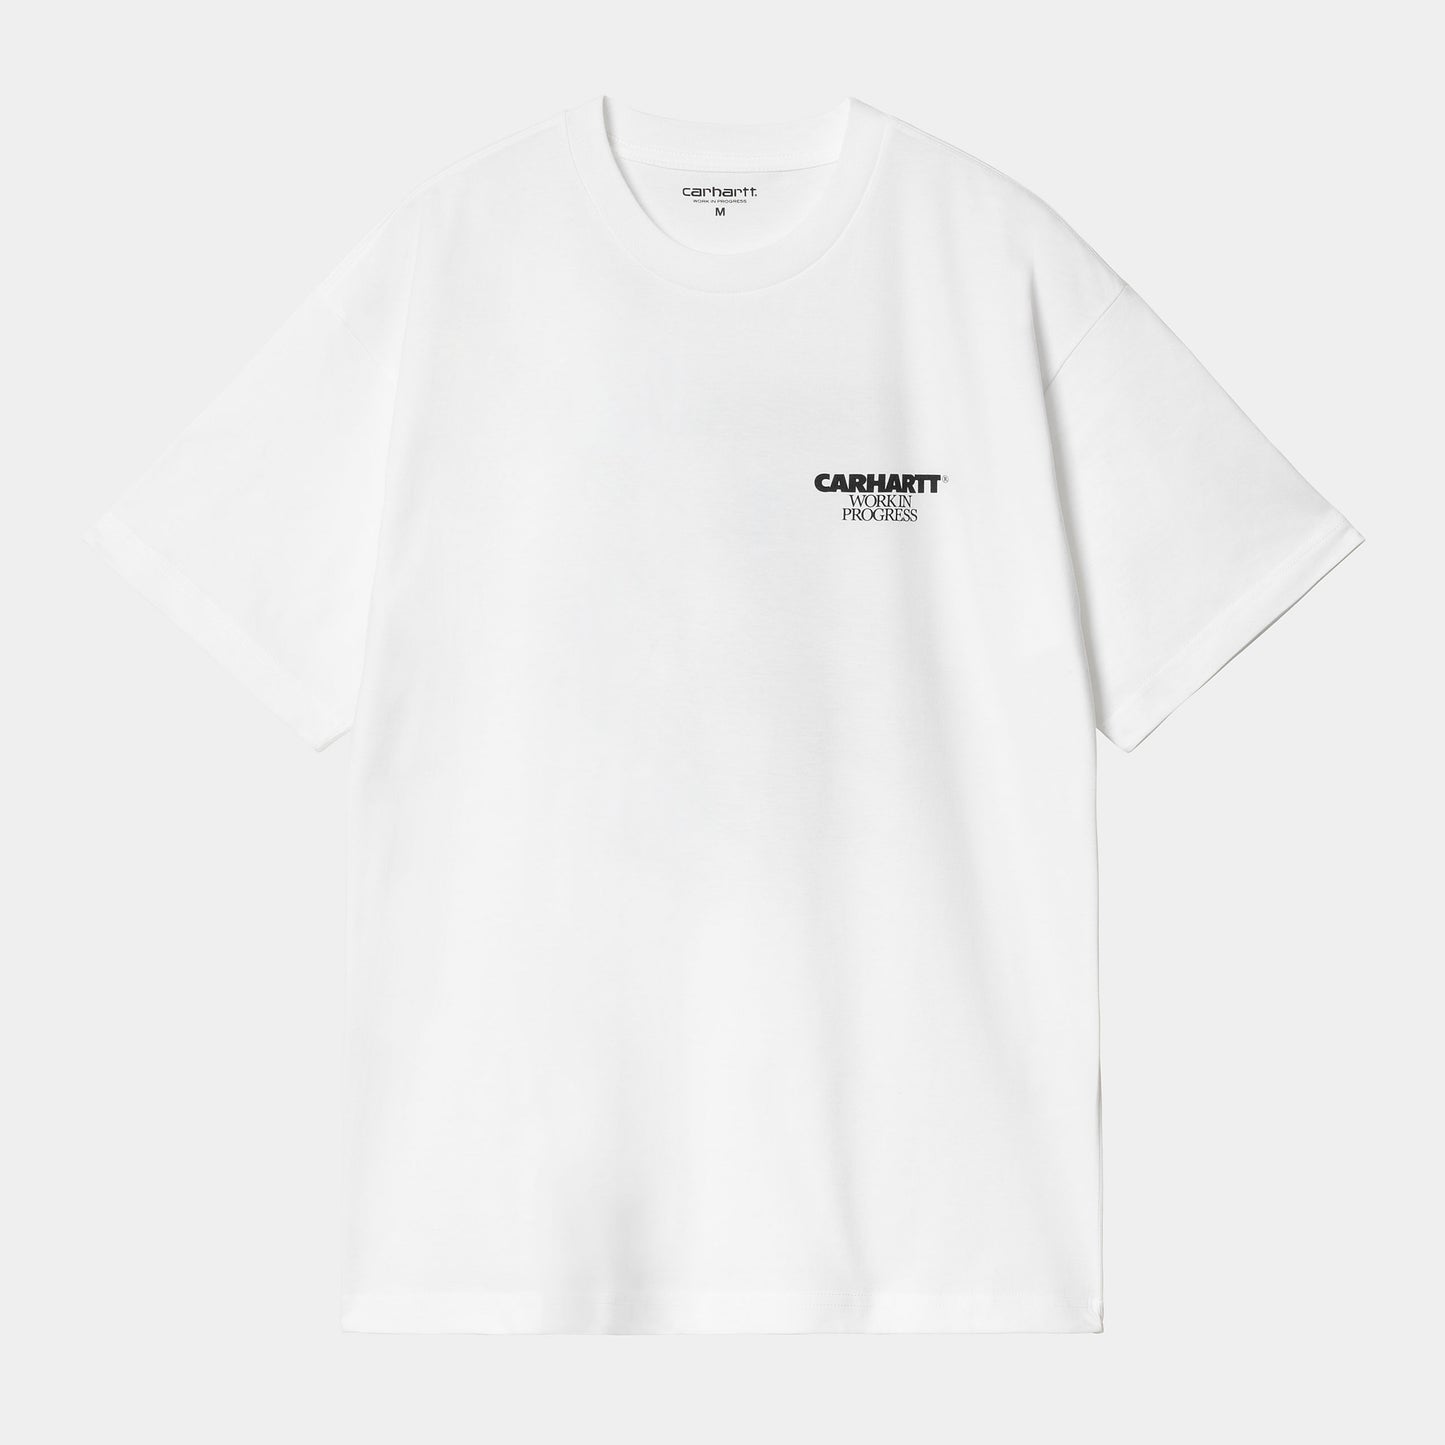 CARHARTT WIP S/S Ducks T-Shirt - White